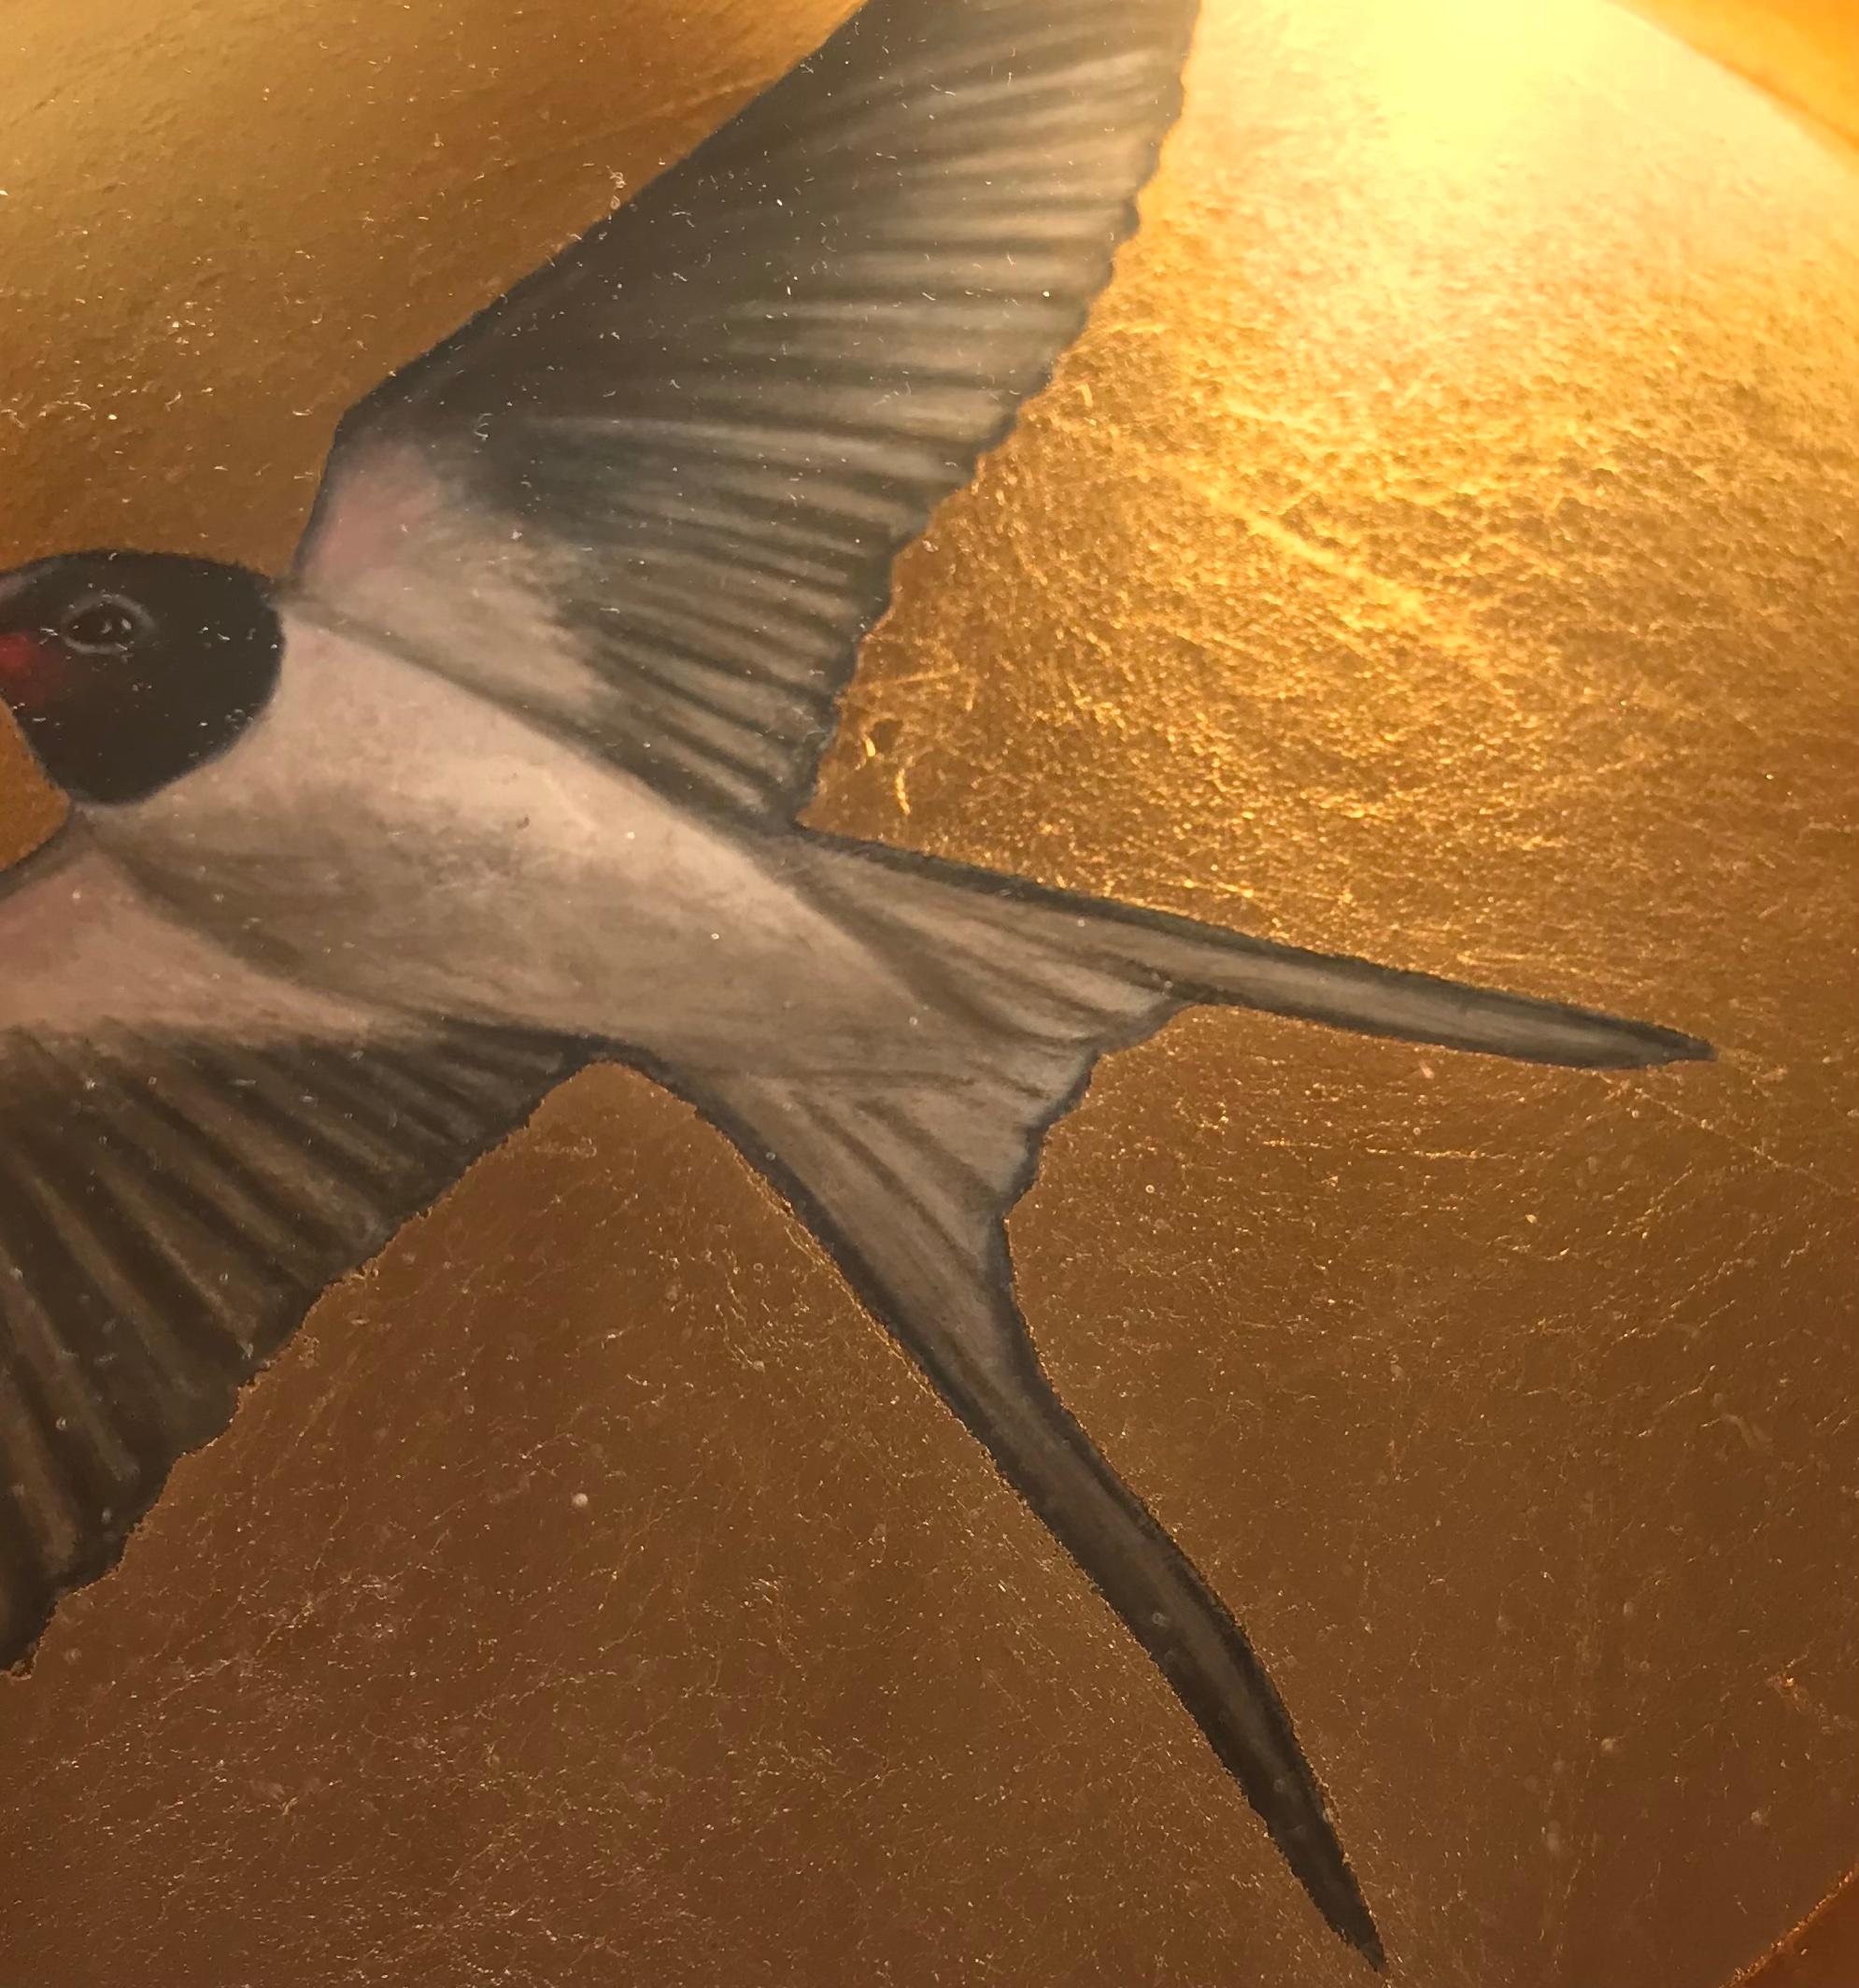 Les œuvres saisissantes de Sally-Ann Johns représentent souvent des oiseaux et des animaux de tous les jours, parfois des portraits, présentés d'une manière unique et passionnante. Placés dans une boîte doublée d'or, ils évoquent des images